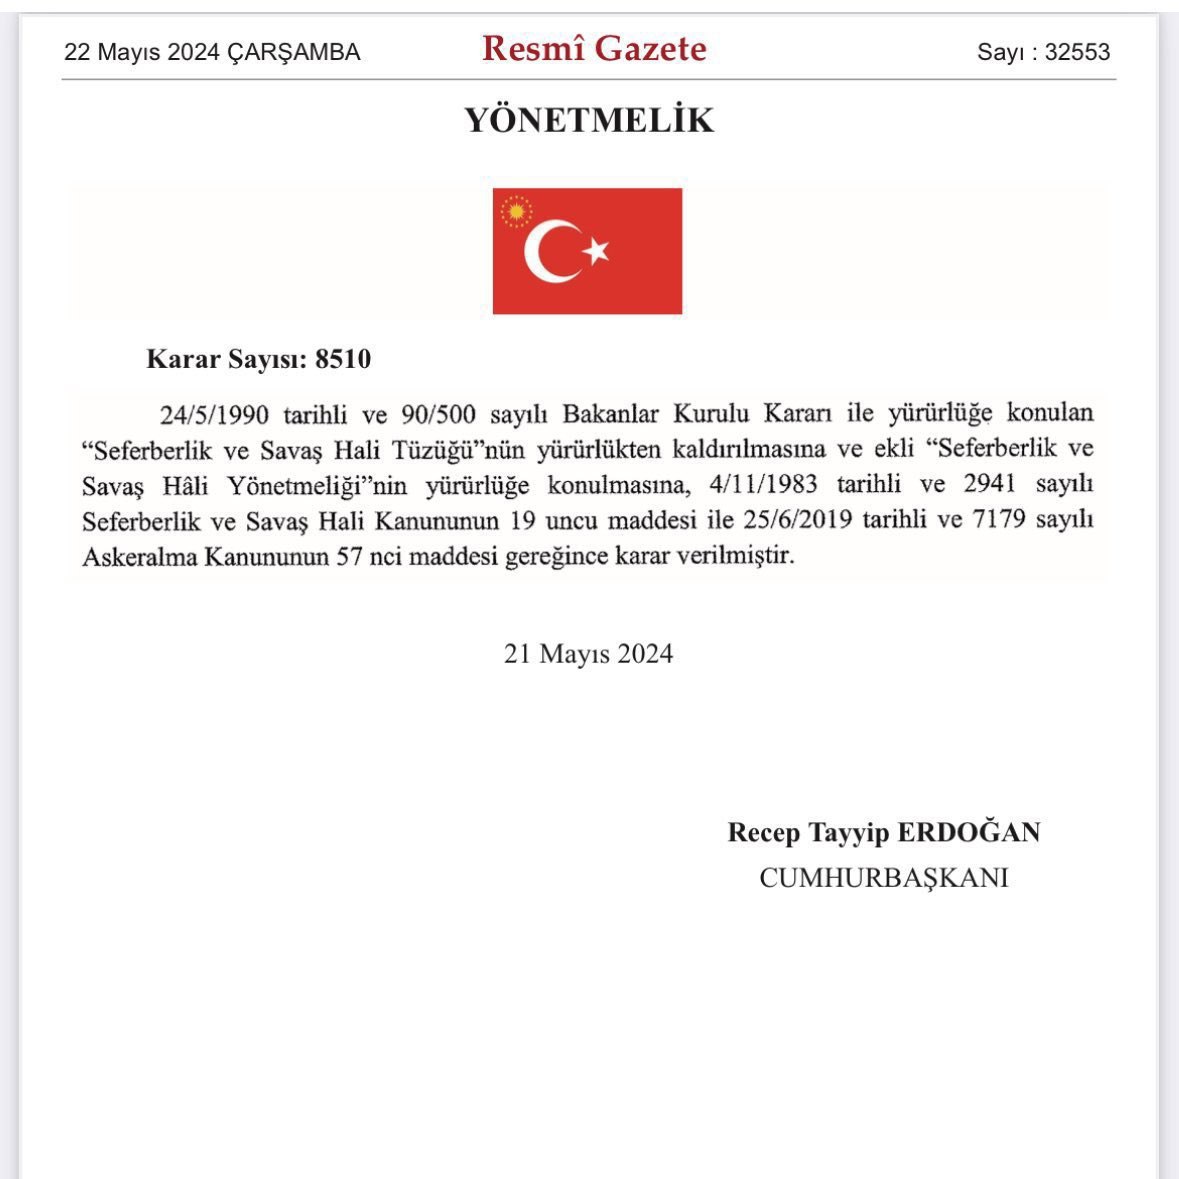 Cumhurbaşkanı Erdoğan'ın imzasıyla 52 sayfalık “Seferberlik ve Savaş Hâli Yönetmeliği” yayımlanarak yürürlüğe girdi.